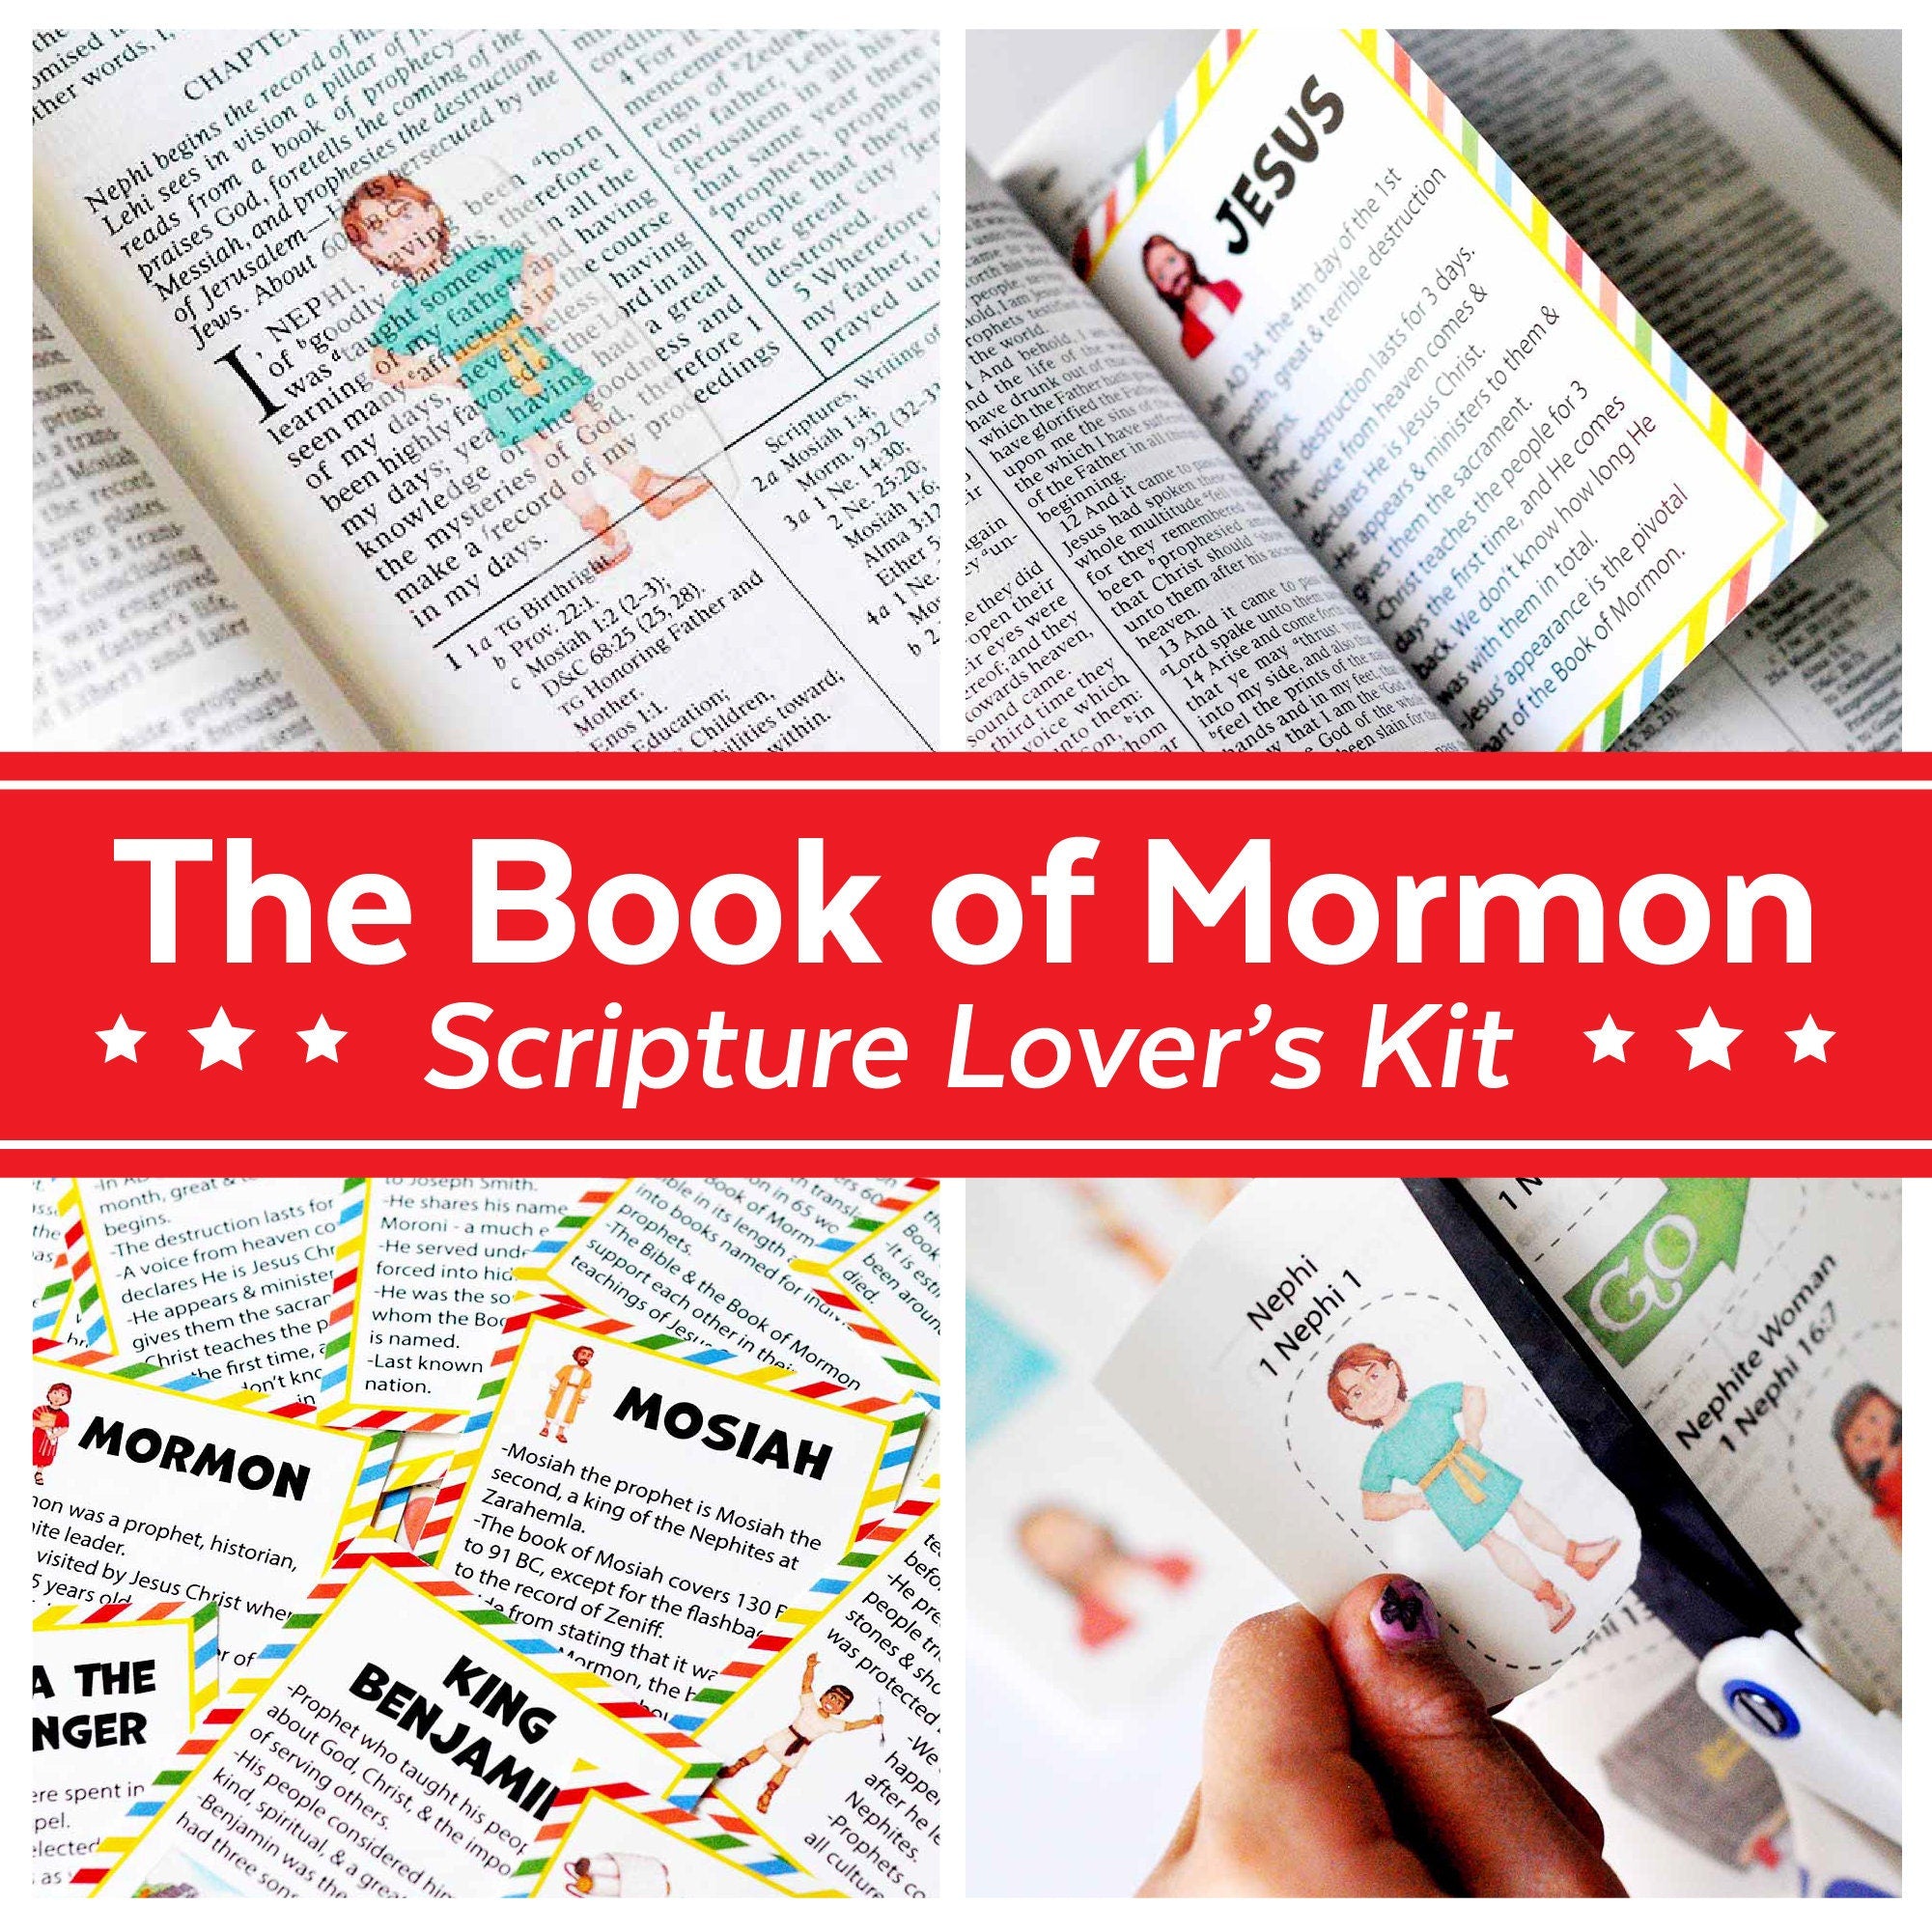 Scripture Stickers - Children's Book of Mormon - 763889102158